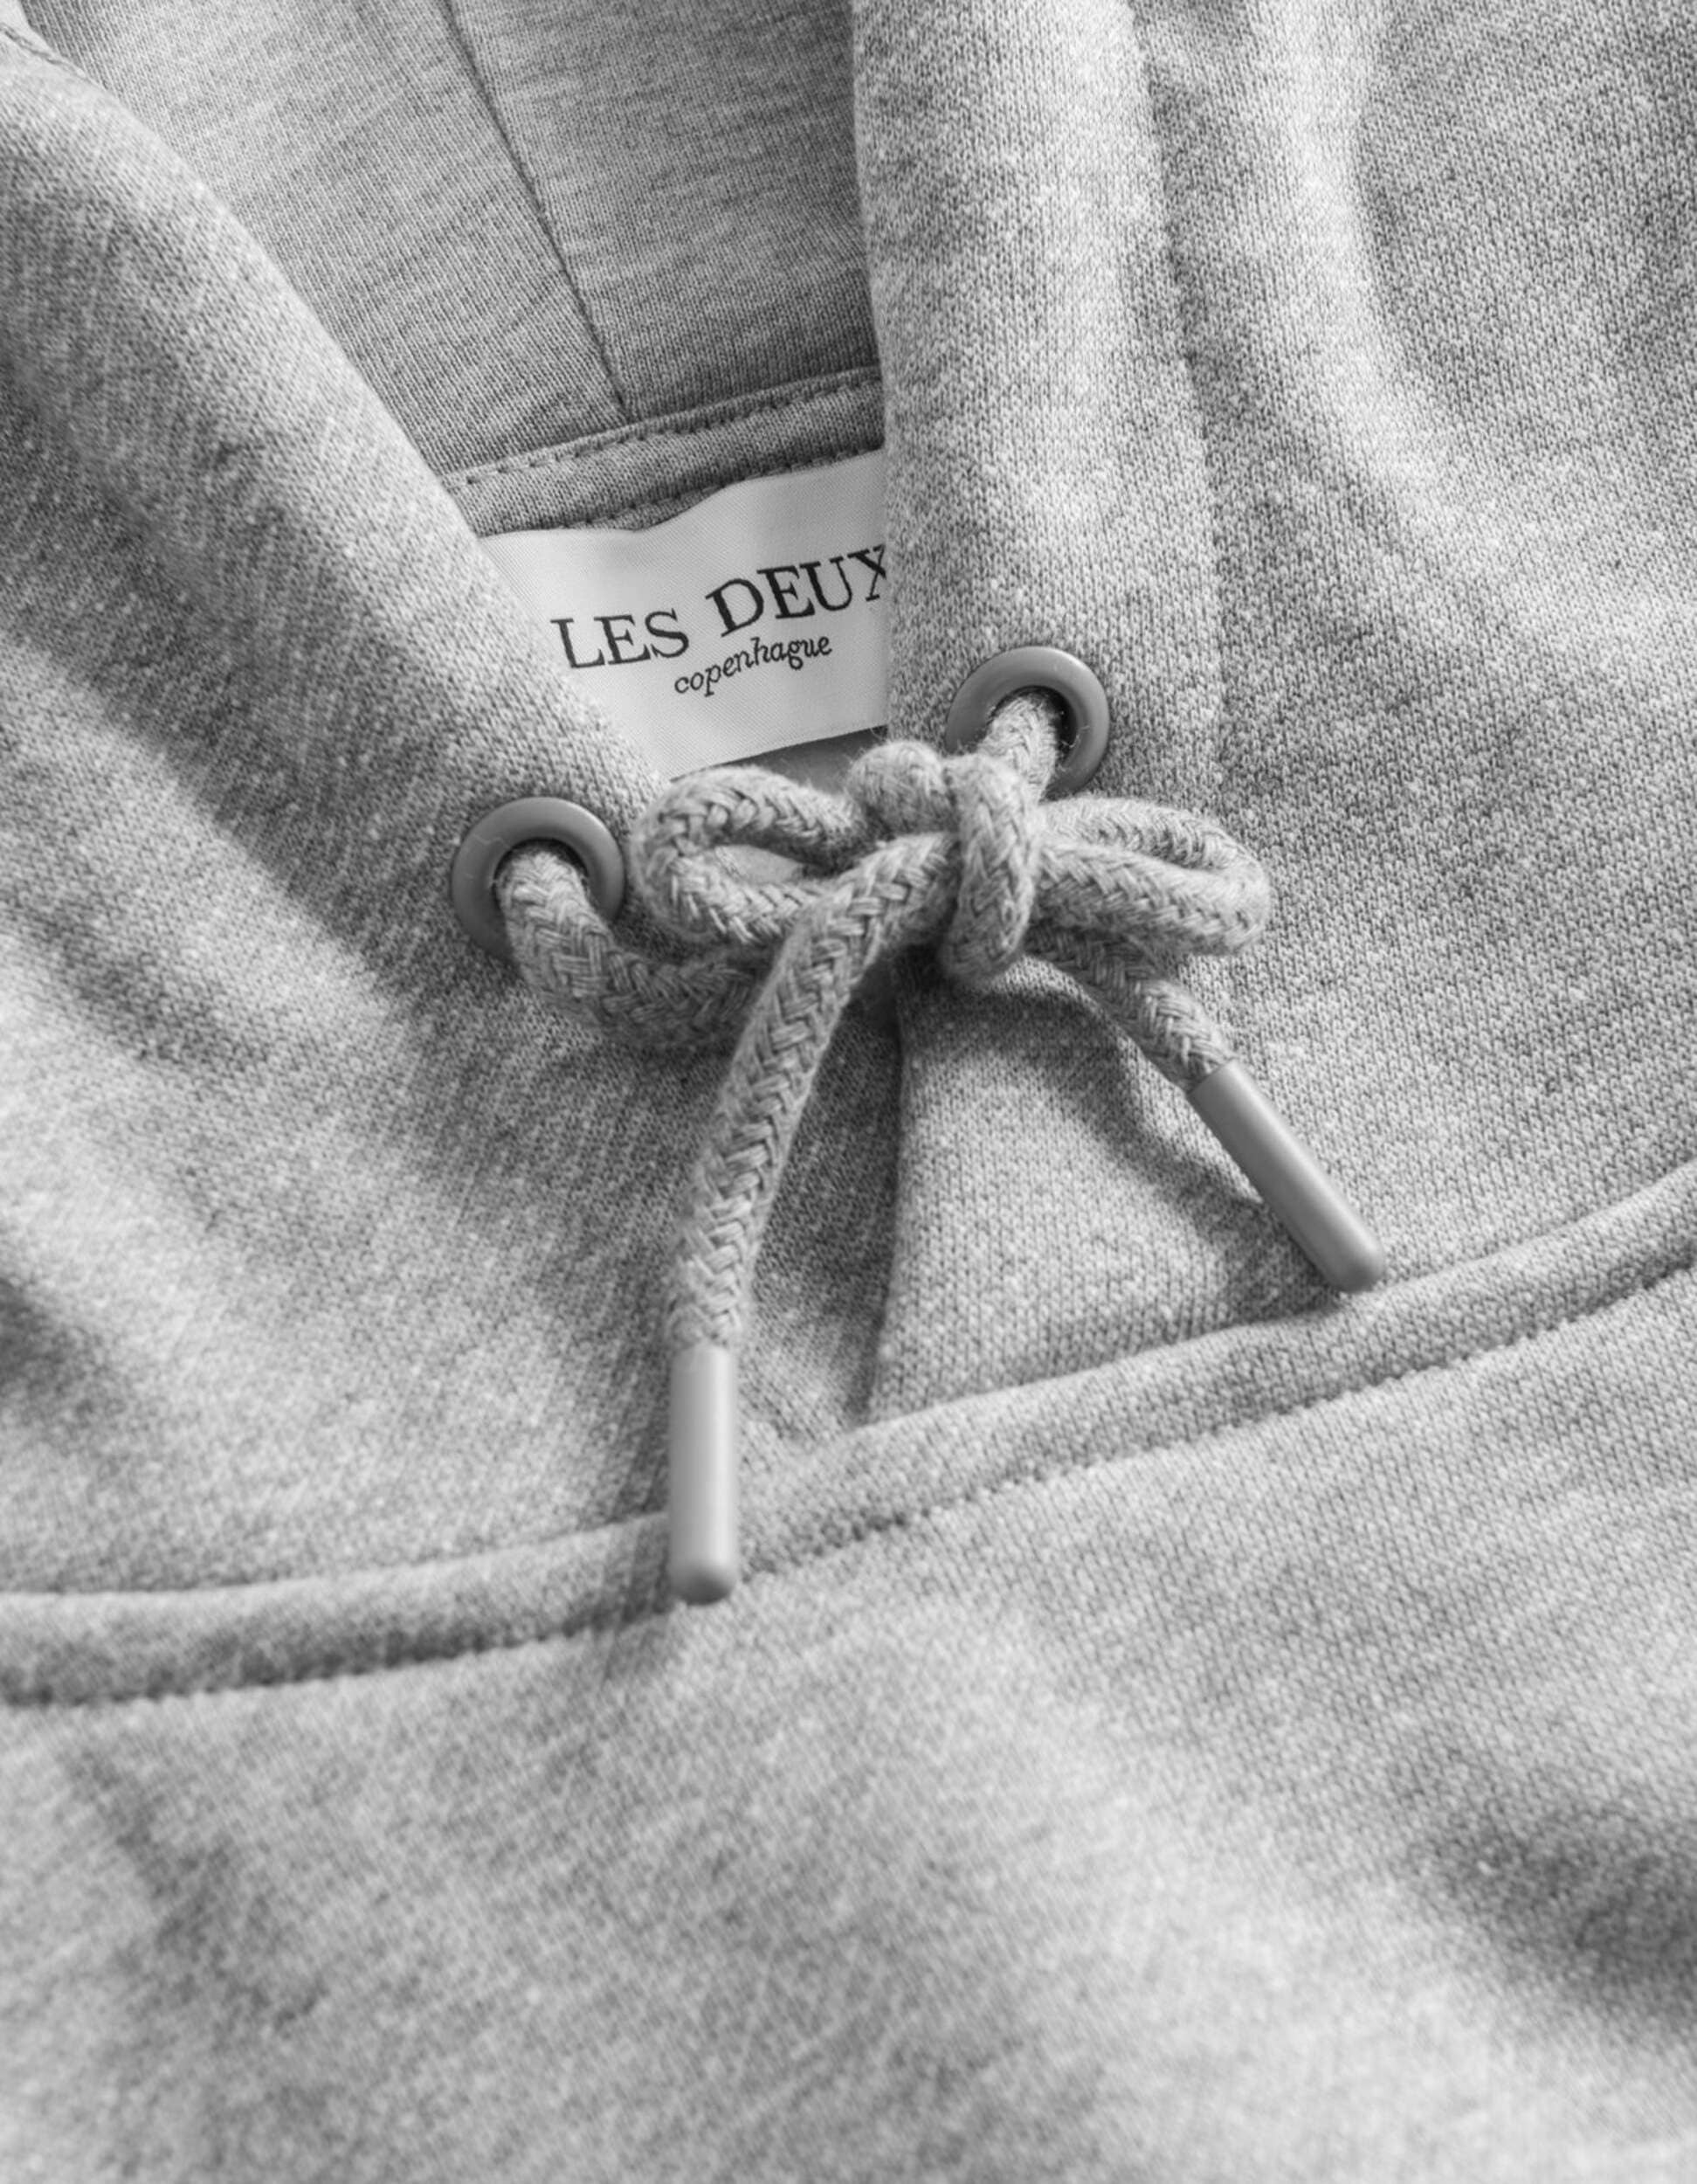 Sweatshirt de la marque Les Deux Crew couleur gris mélangé pour homme détail